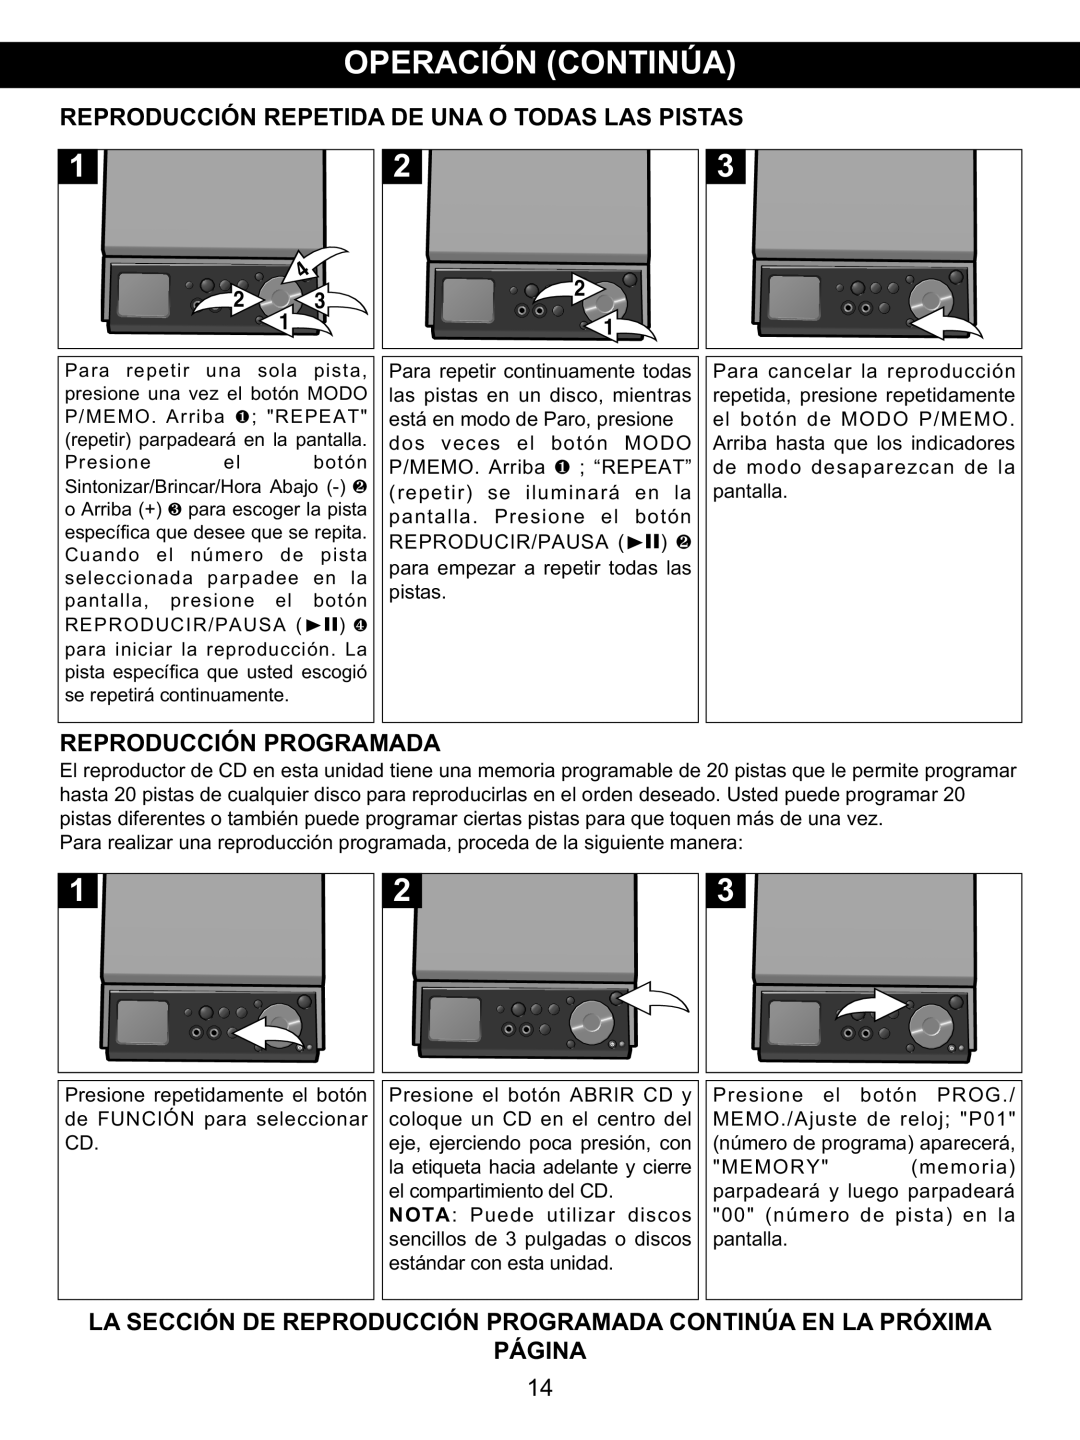 Memorex MX4139 manual Reproducción Repetida De Una O Todas Las Pistas, Reproducción Programada, Página 